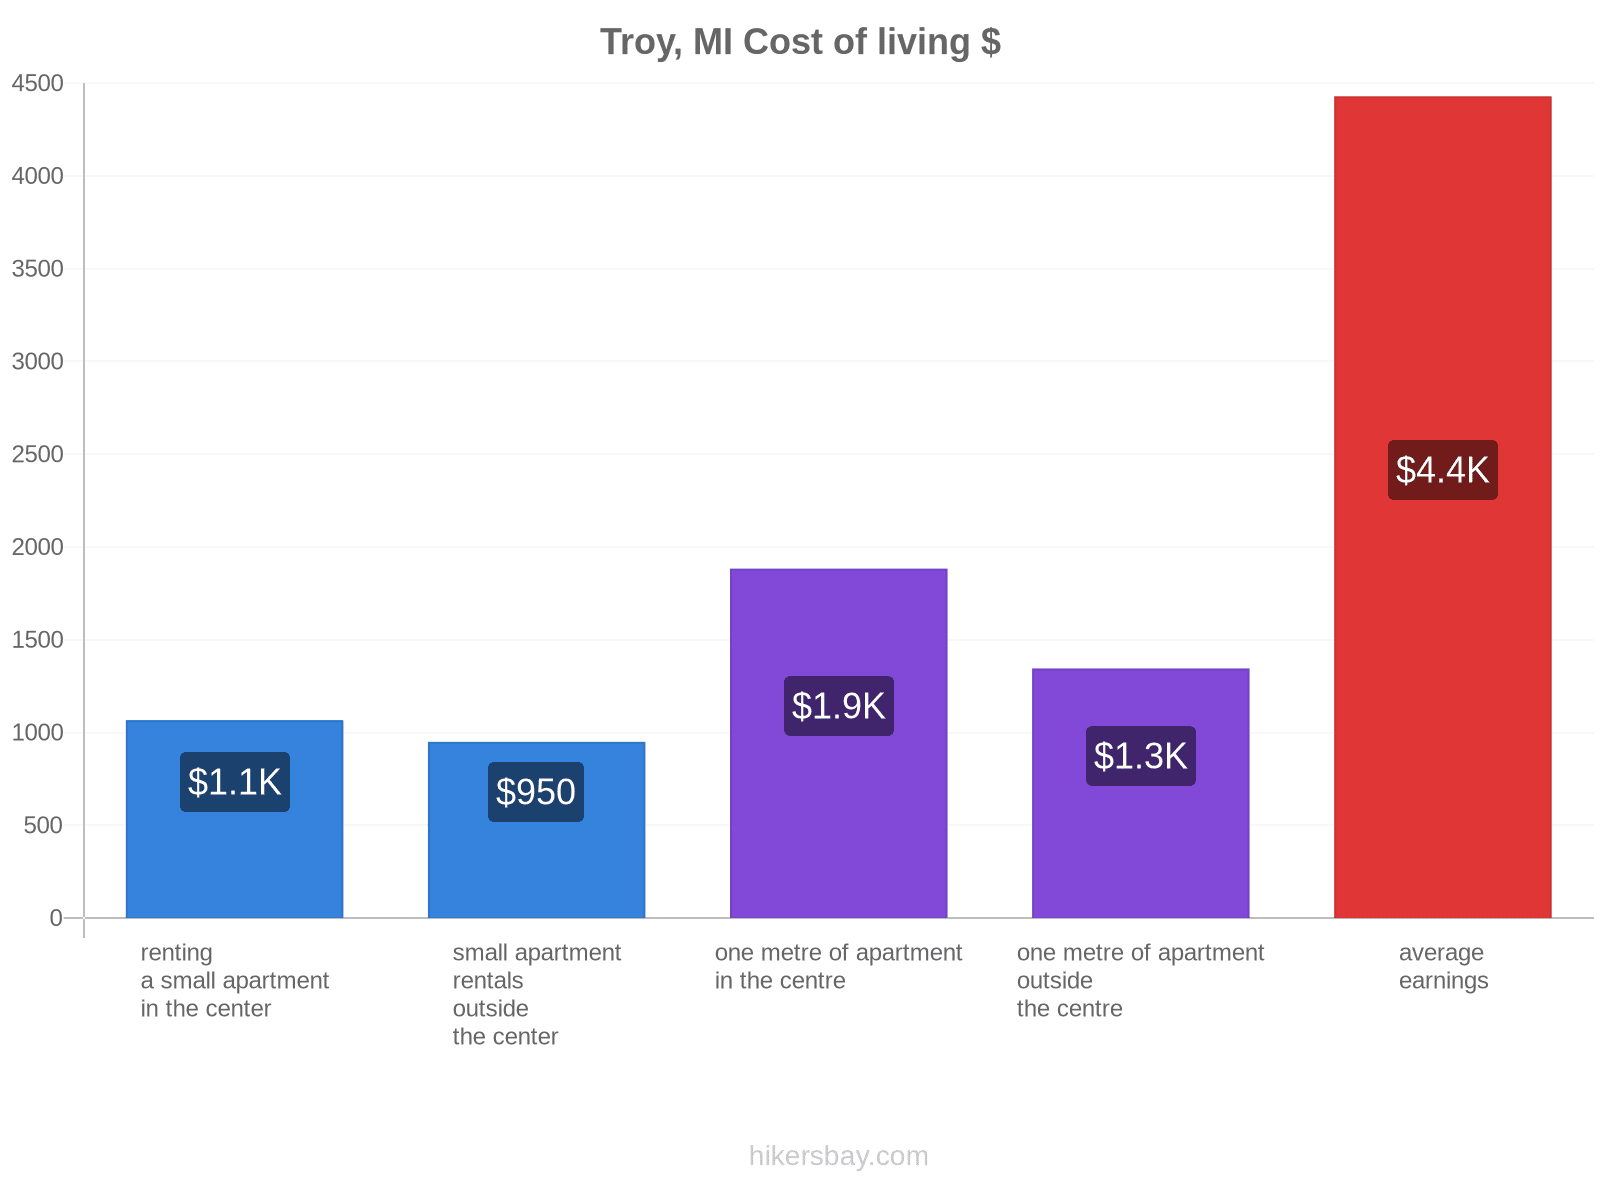 Troy, MI cost of living hikersbay.com